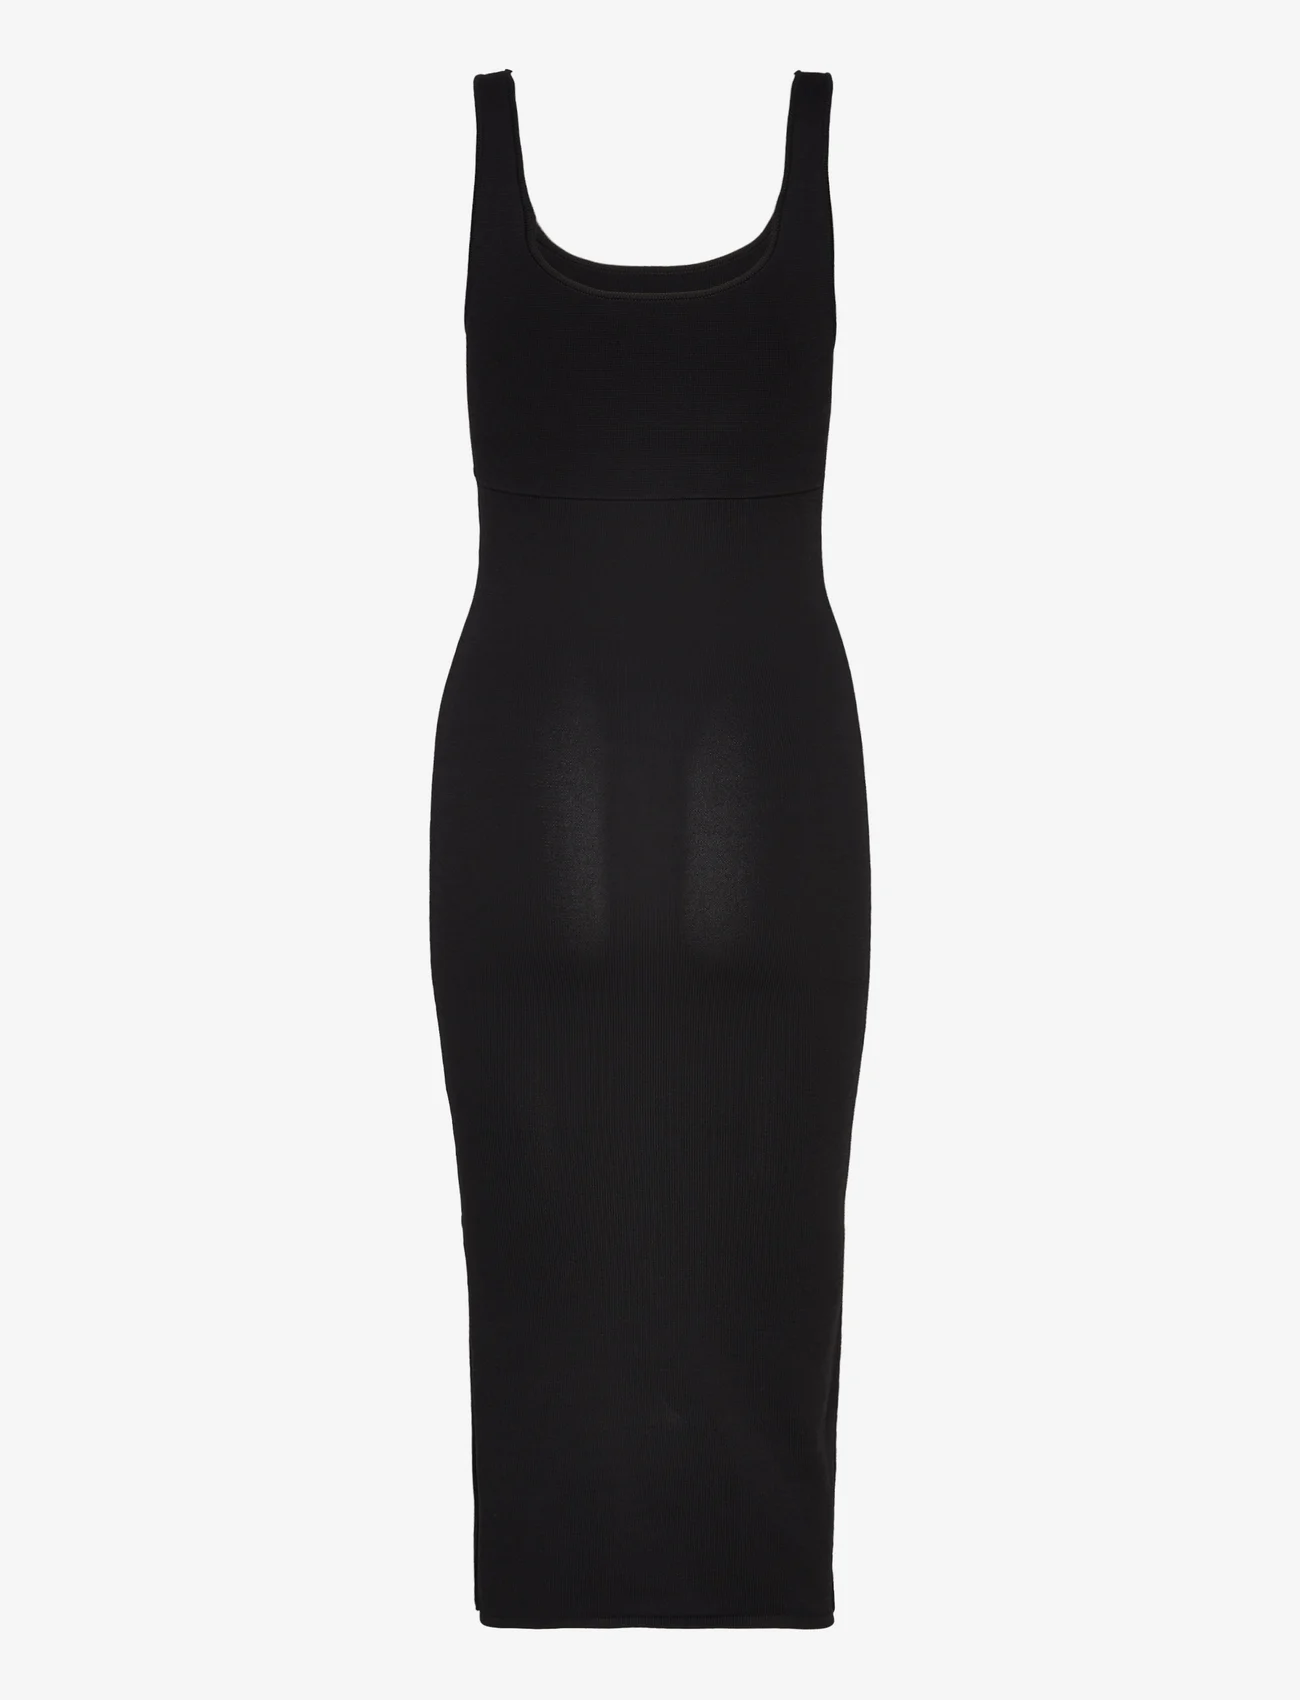 Calvin Klein - SENSUAL KNITTED BODYCON DRESS - etuikleider - ck black - 1